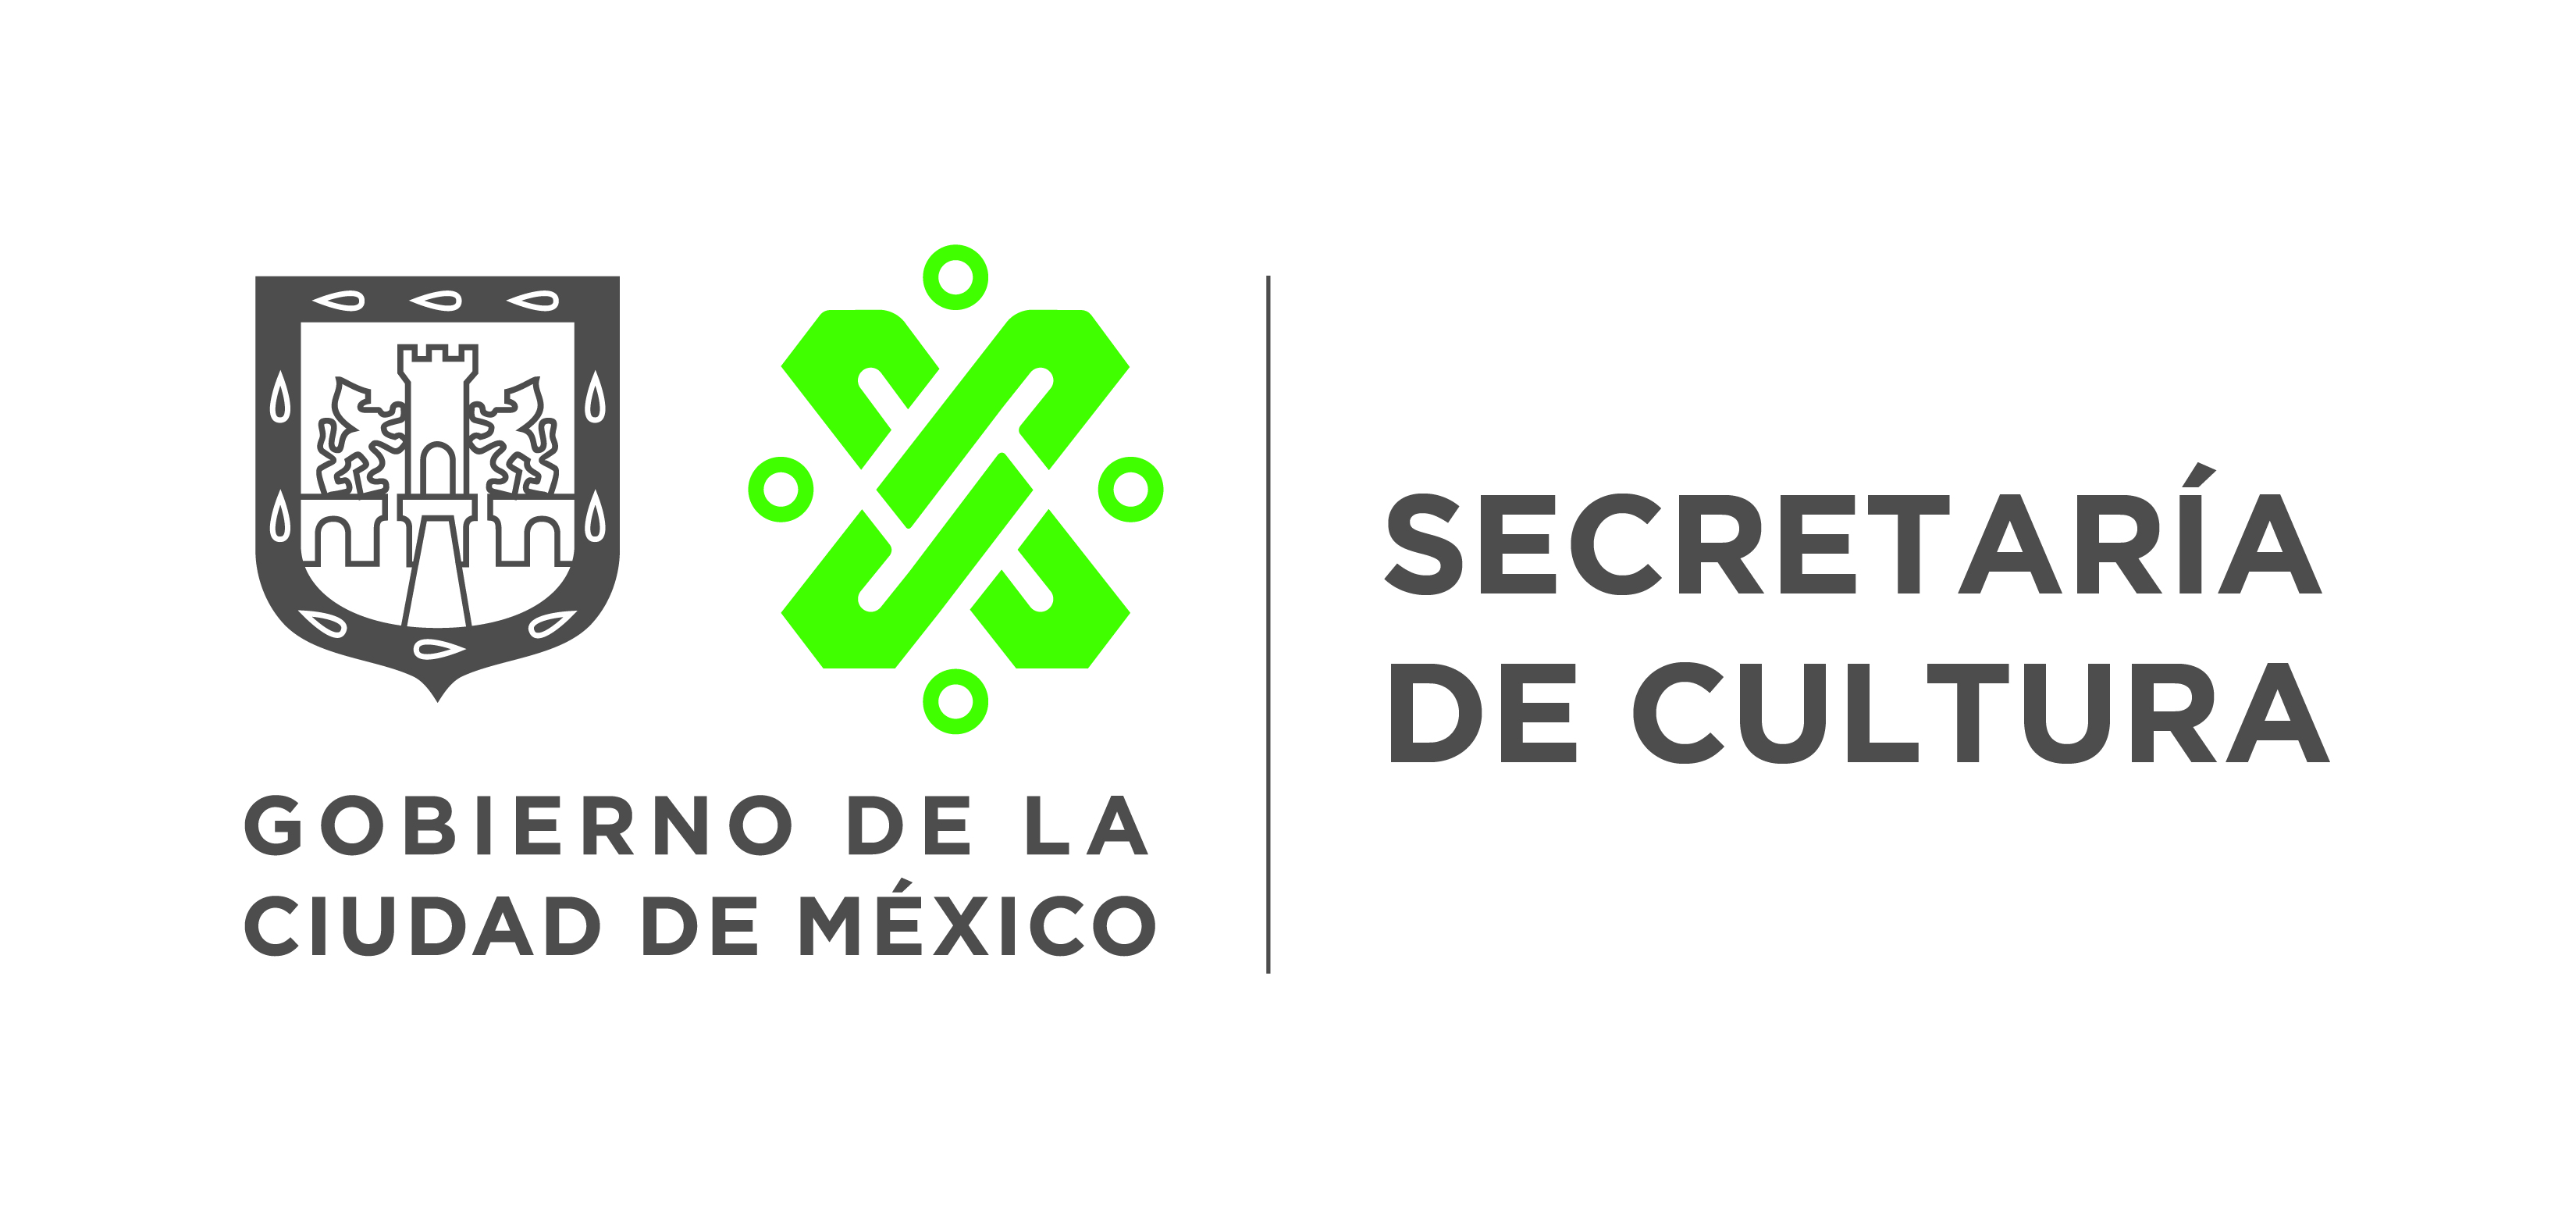 Secretaría de Cultura de la Ciudad de México : Instituciones culturales